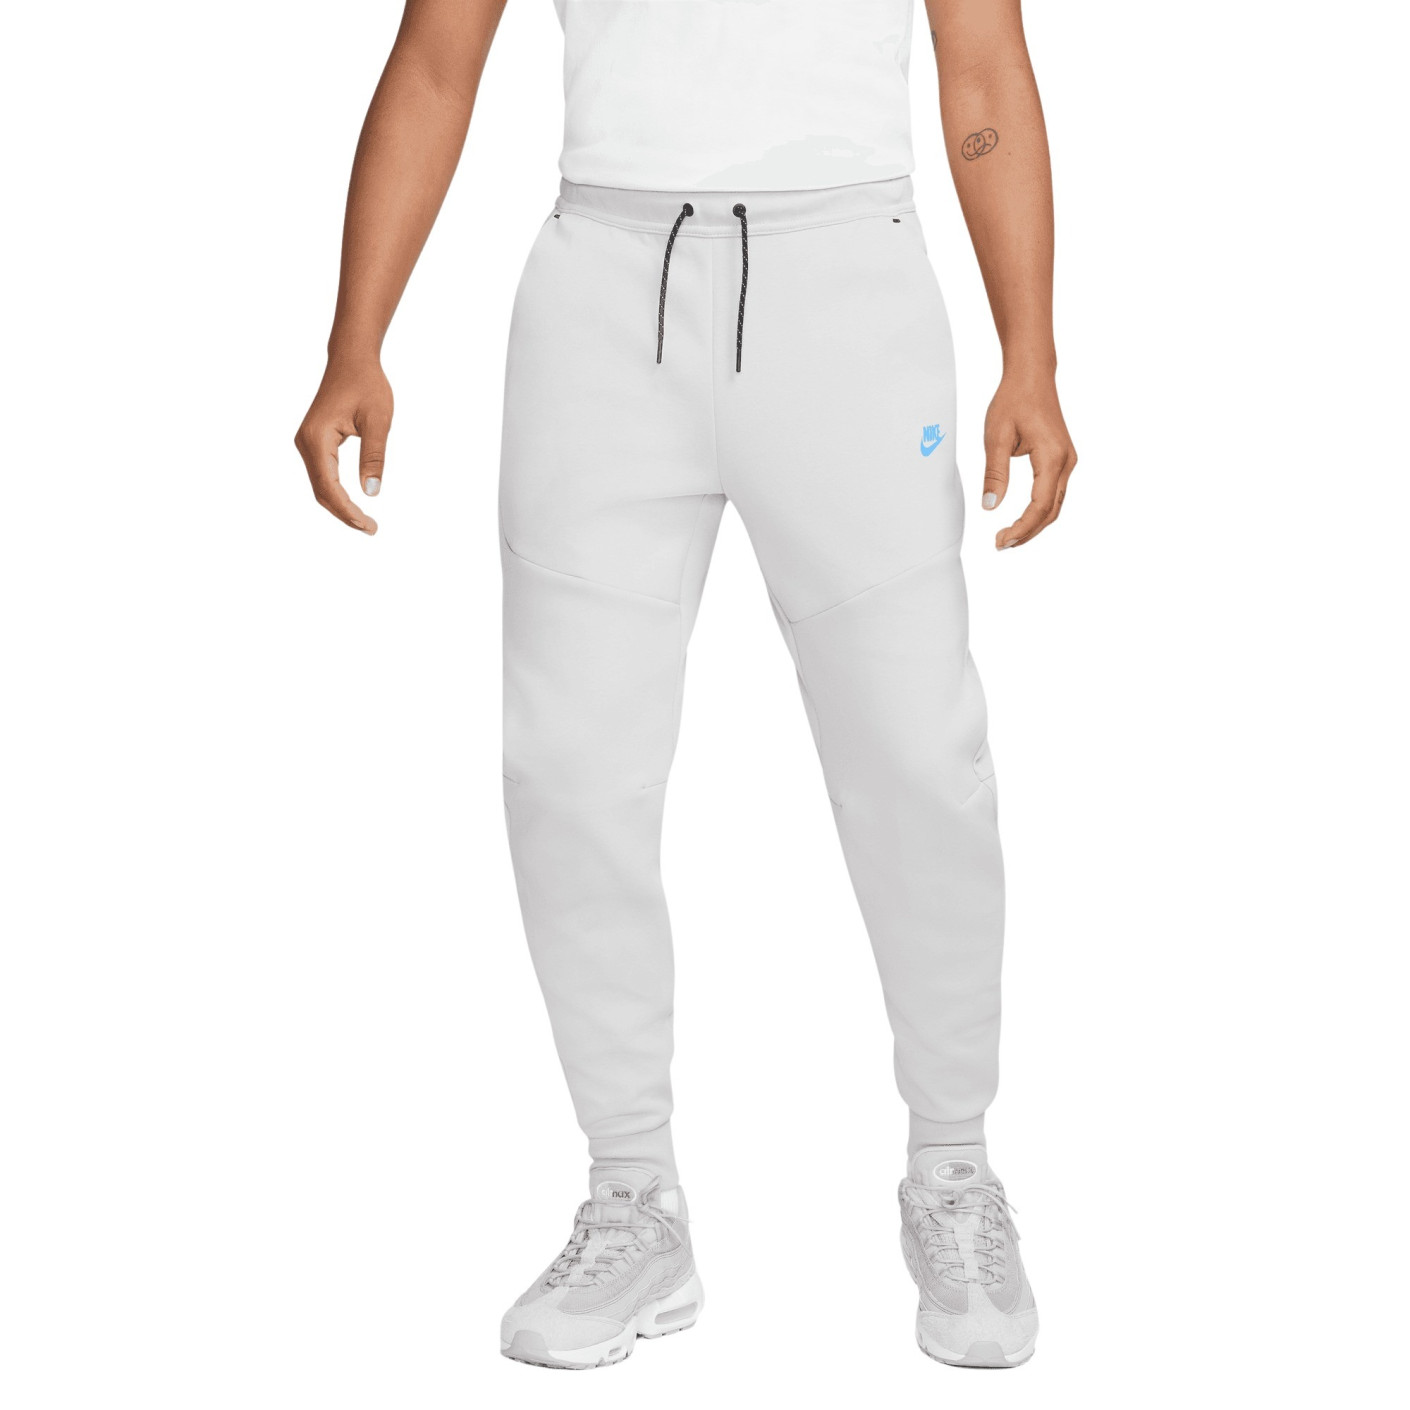 Nike Jogger Tech Fleece White 